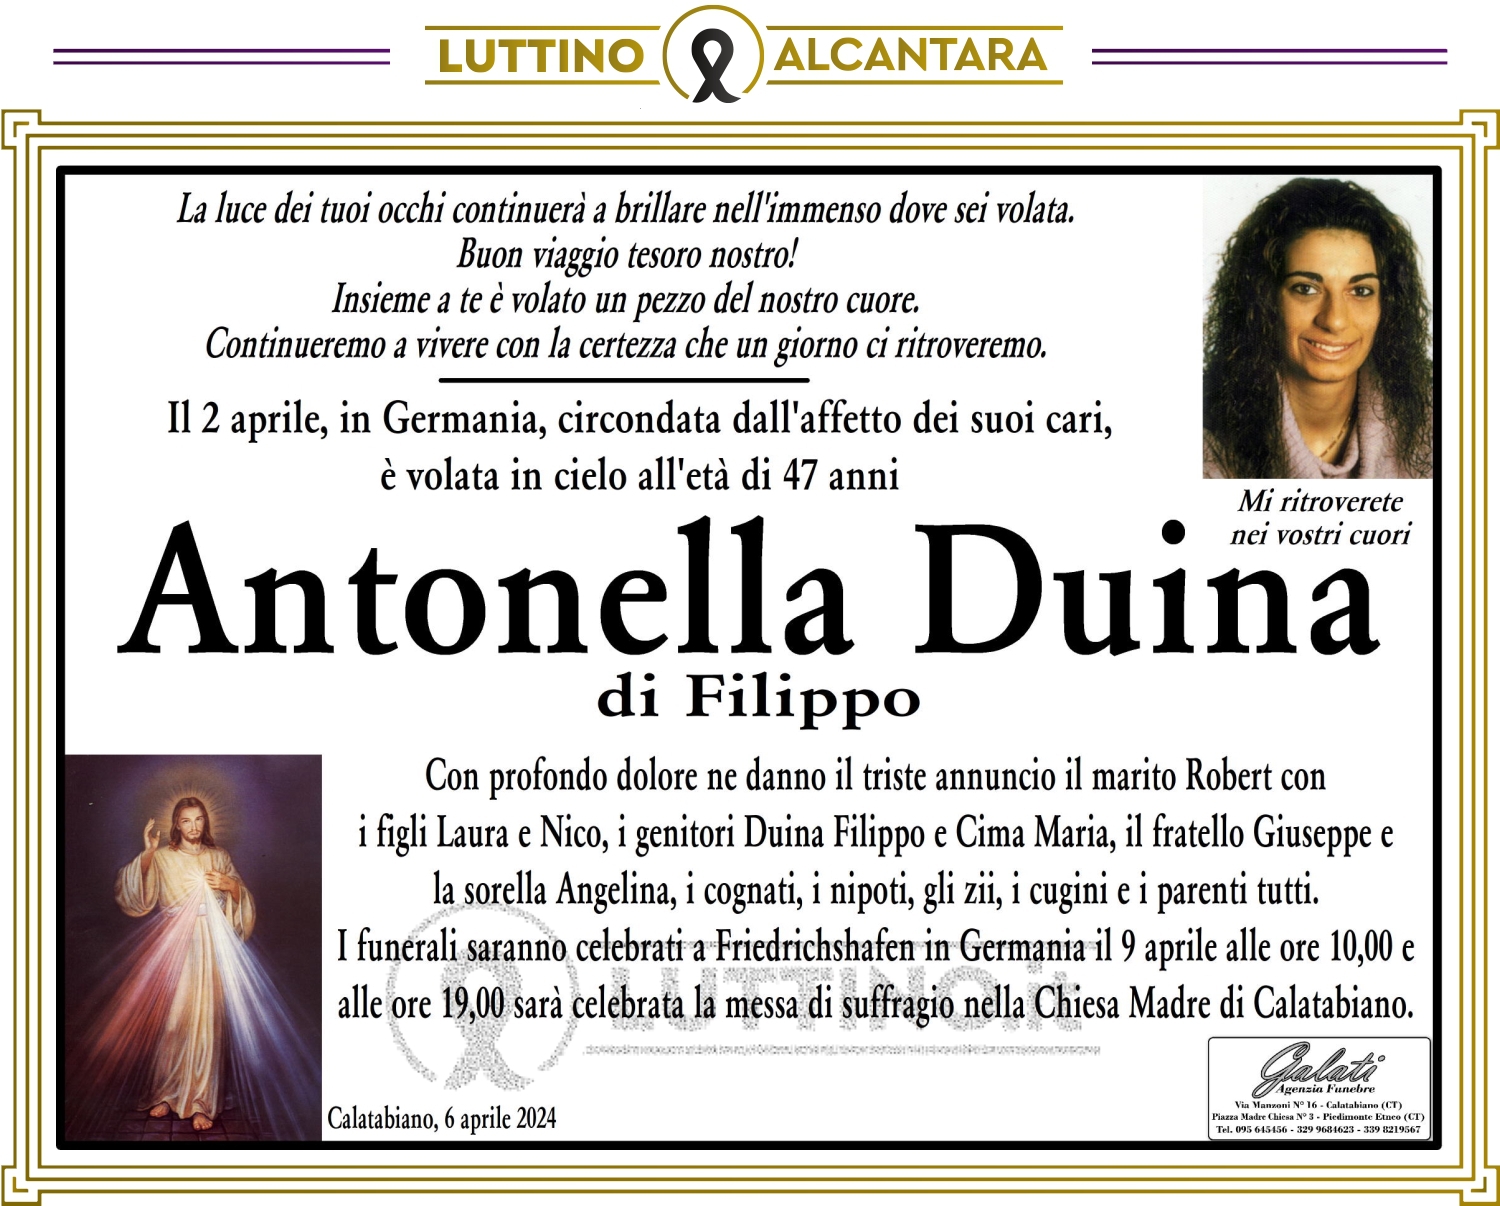 Antonella Duina